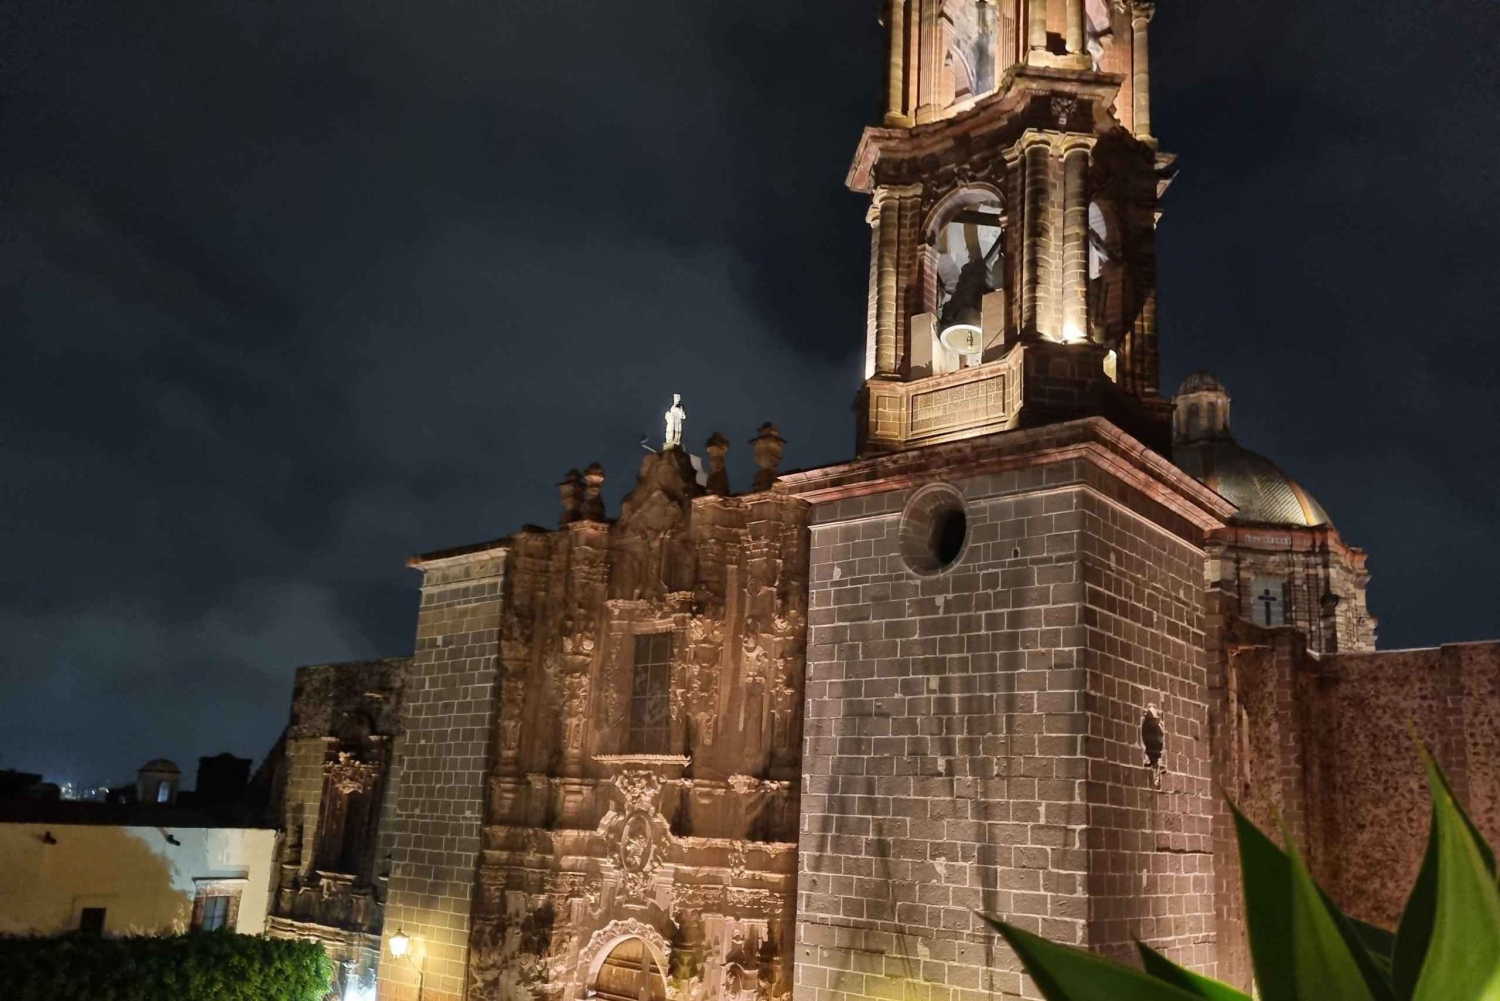 Historical & Cultural Walking Tour of San Miguel de Allende